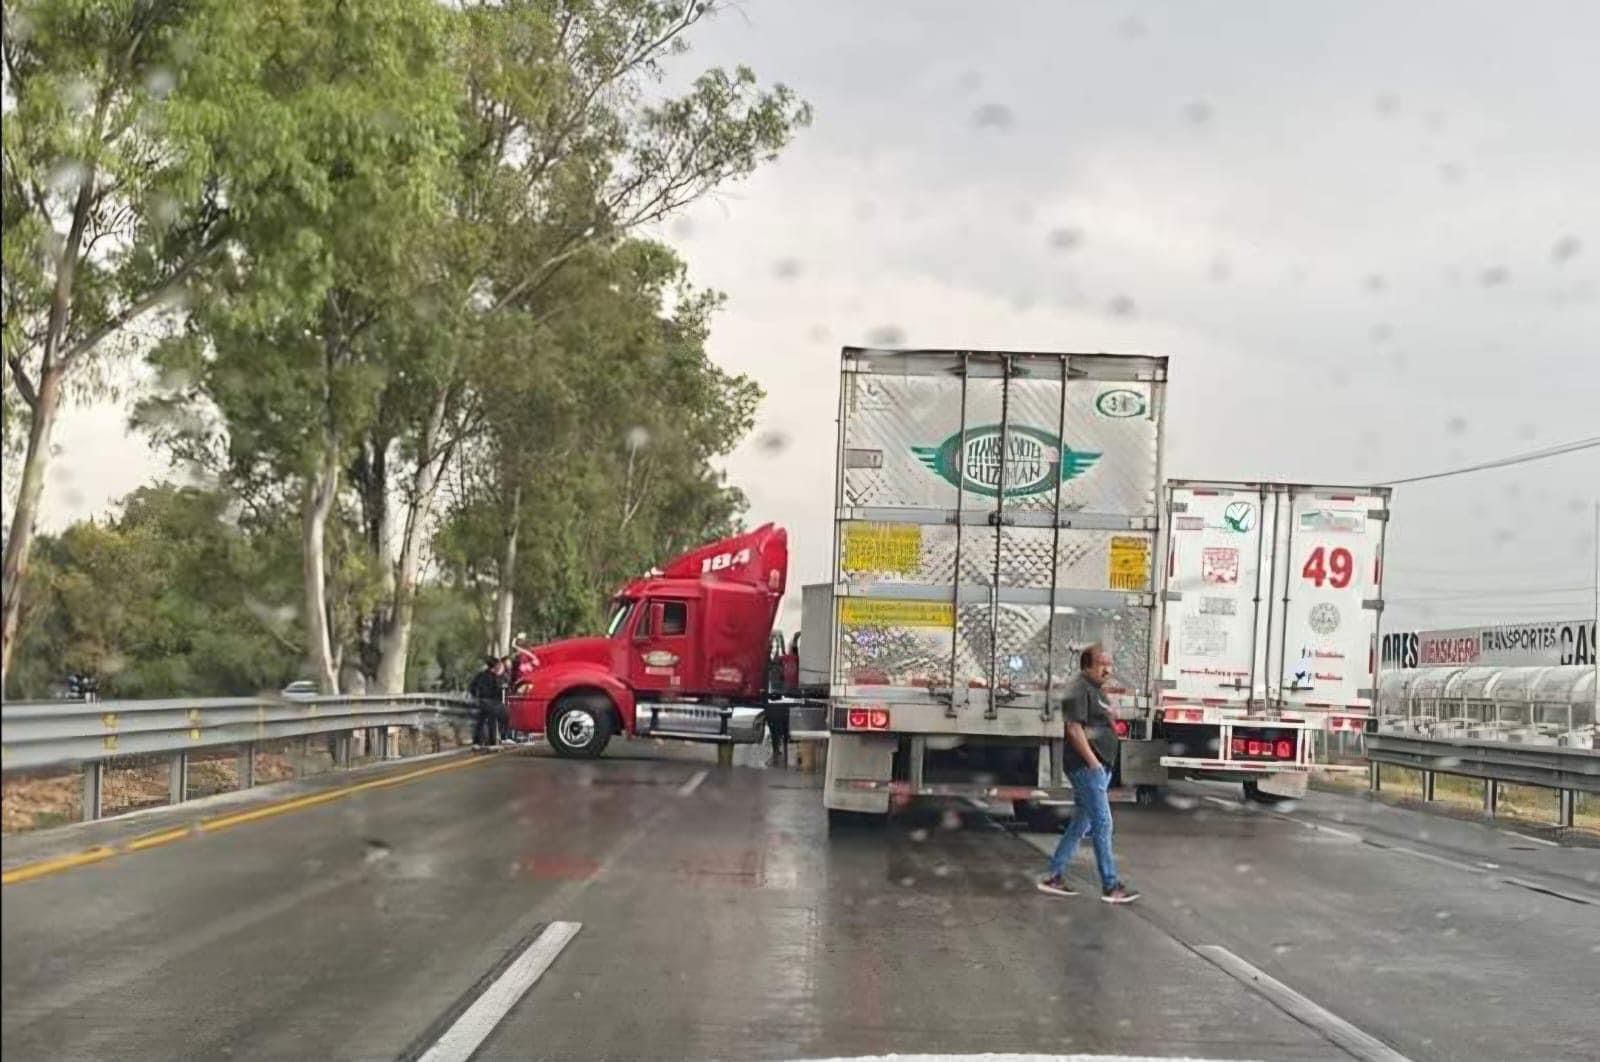 Autopista México-Querétaro presenta intensa carga vehicular por volcadura de tractocamión